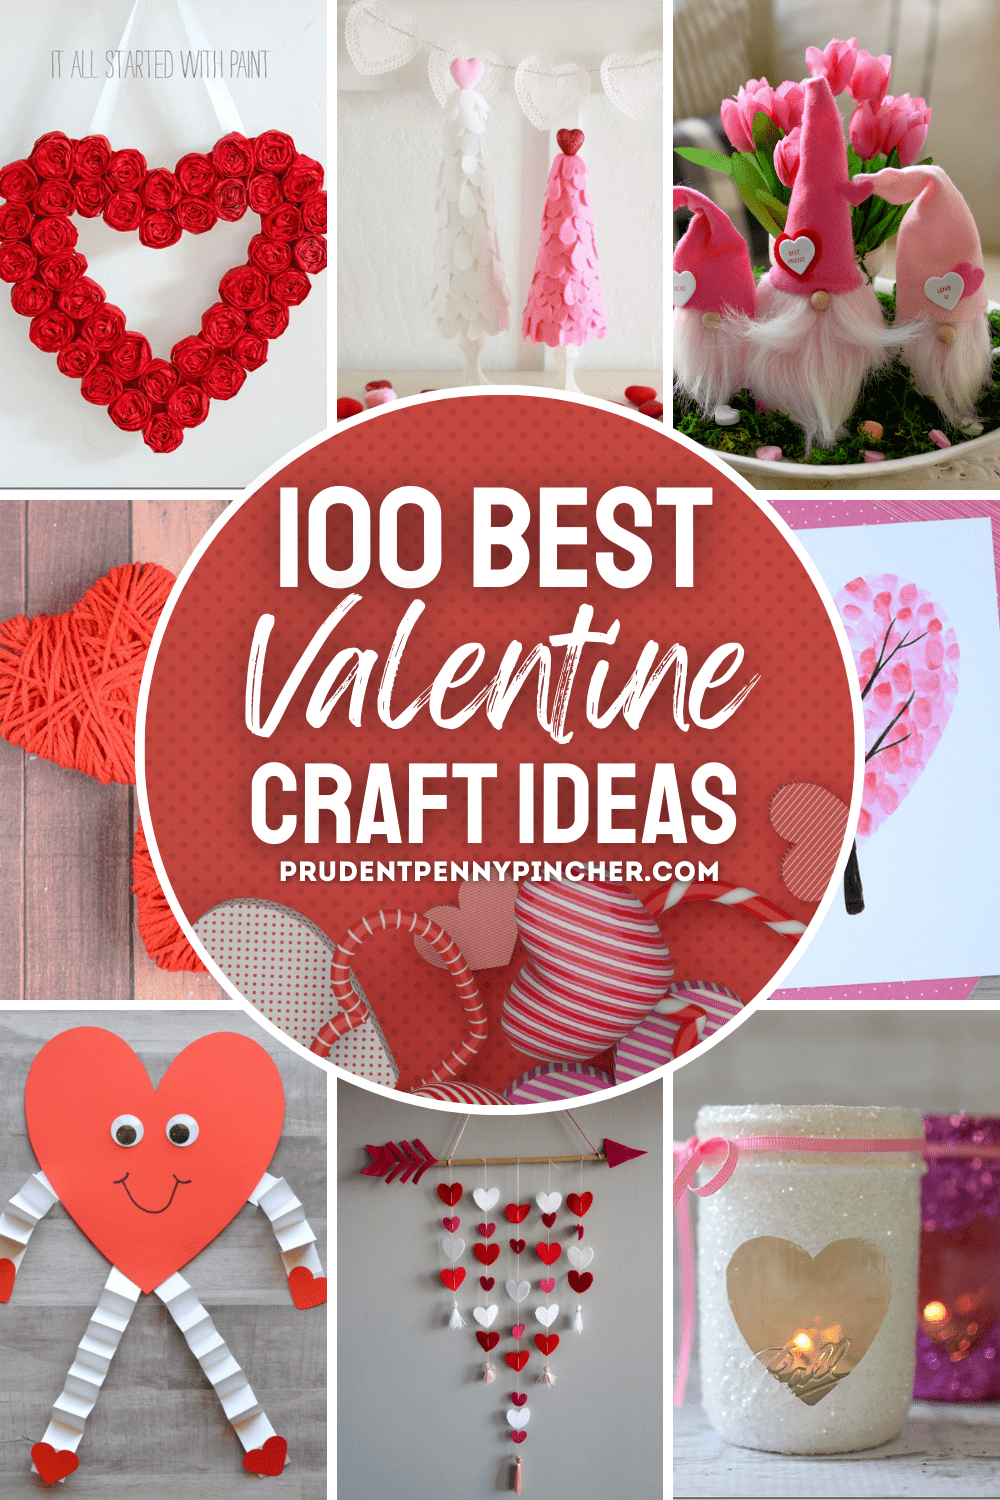 Heart Suncatcher Tutorial - Crafts by Amanda - Valentine's Day Crafts